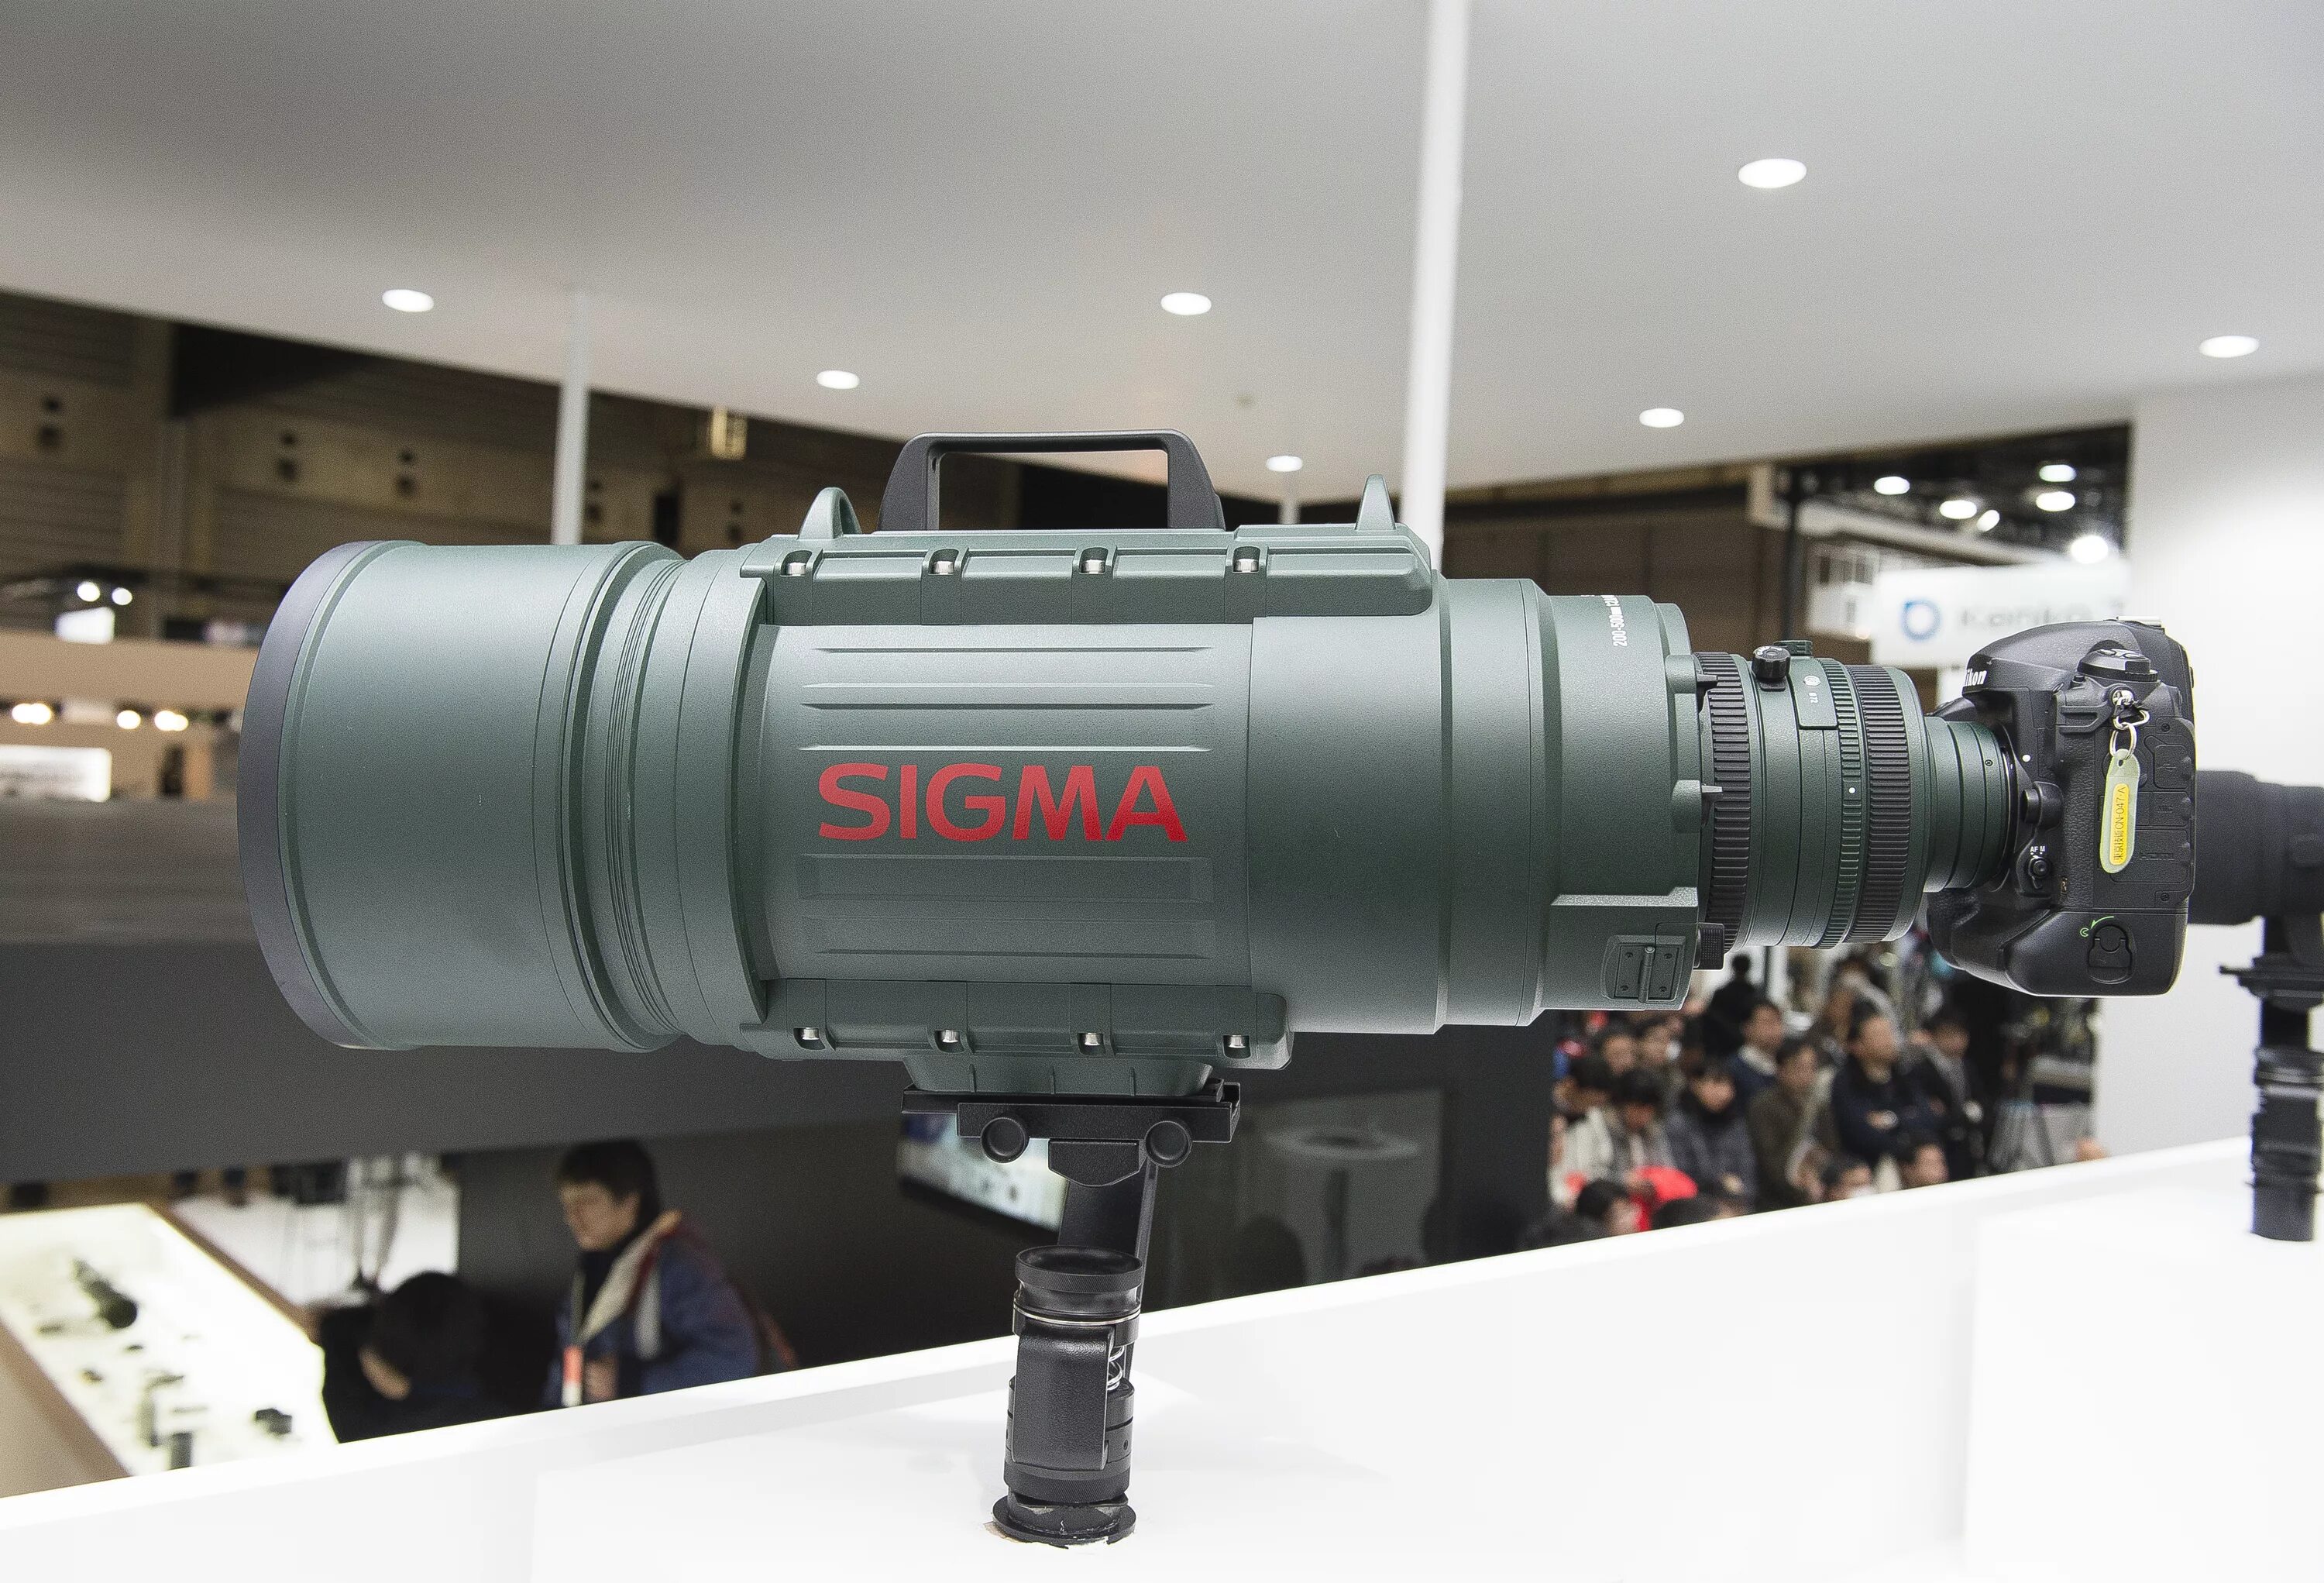 Sigma 2.0. Sigma 200-500mm f/2.8 apo ex DG. Sigma 200-500 mm f2.8. Sigma 200-500 f/2.8. Sigma af 200-500mm f/2.8.